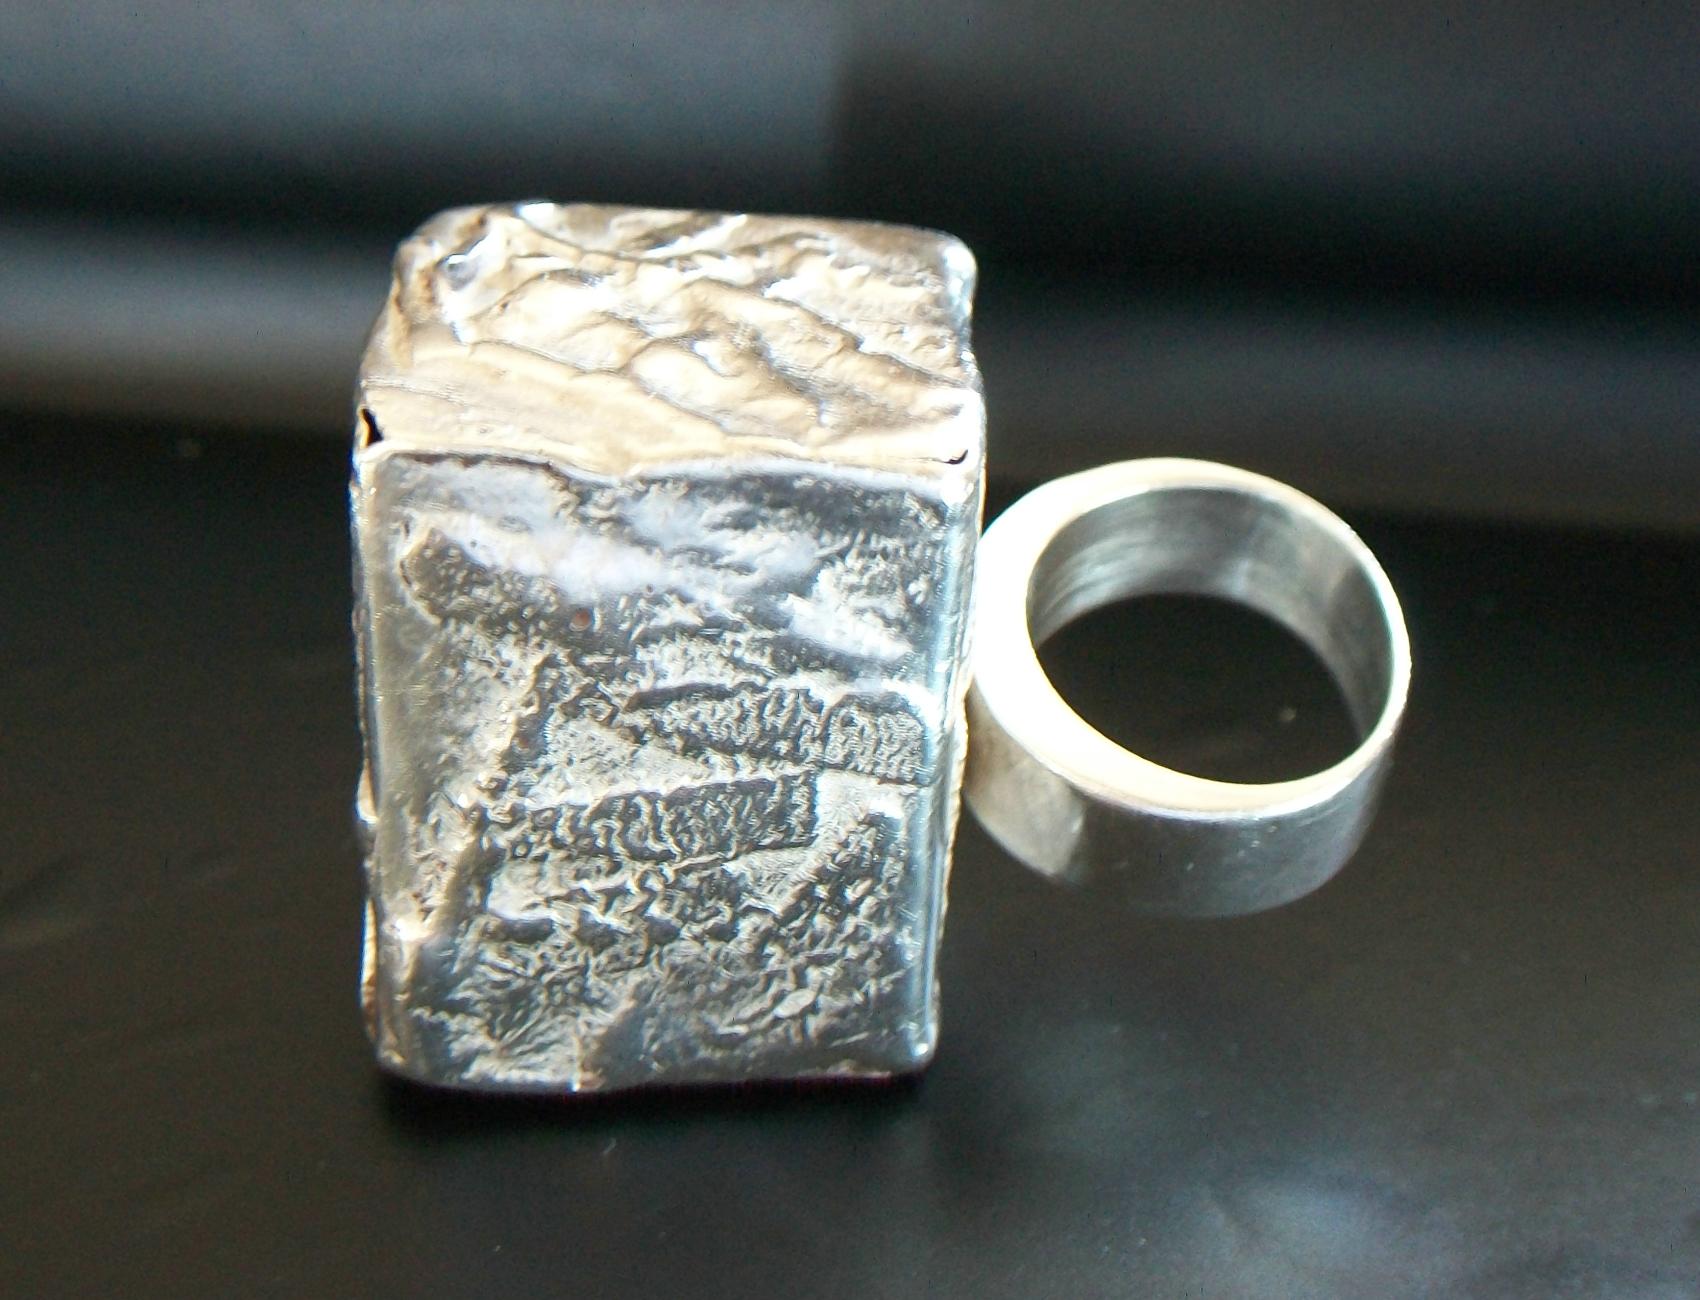 Massive Modernist Fine Silver Statement Ring - 950/1000 - Mexico - Circa 1970's For Sale 3